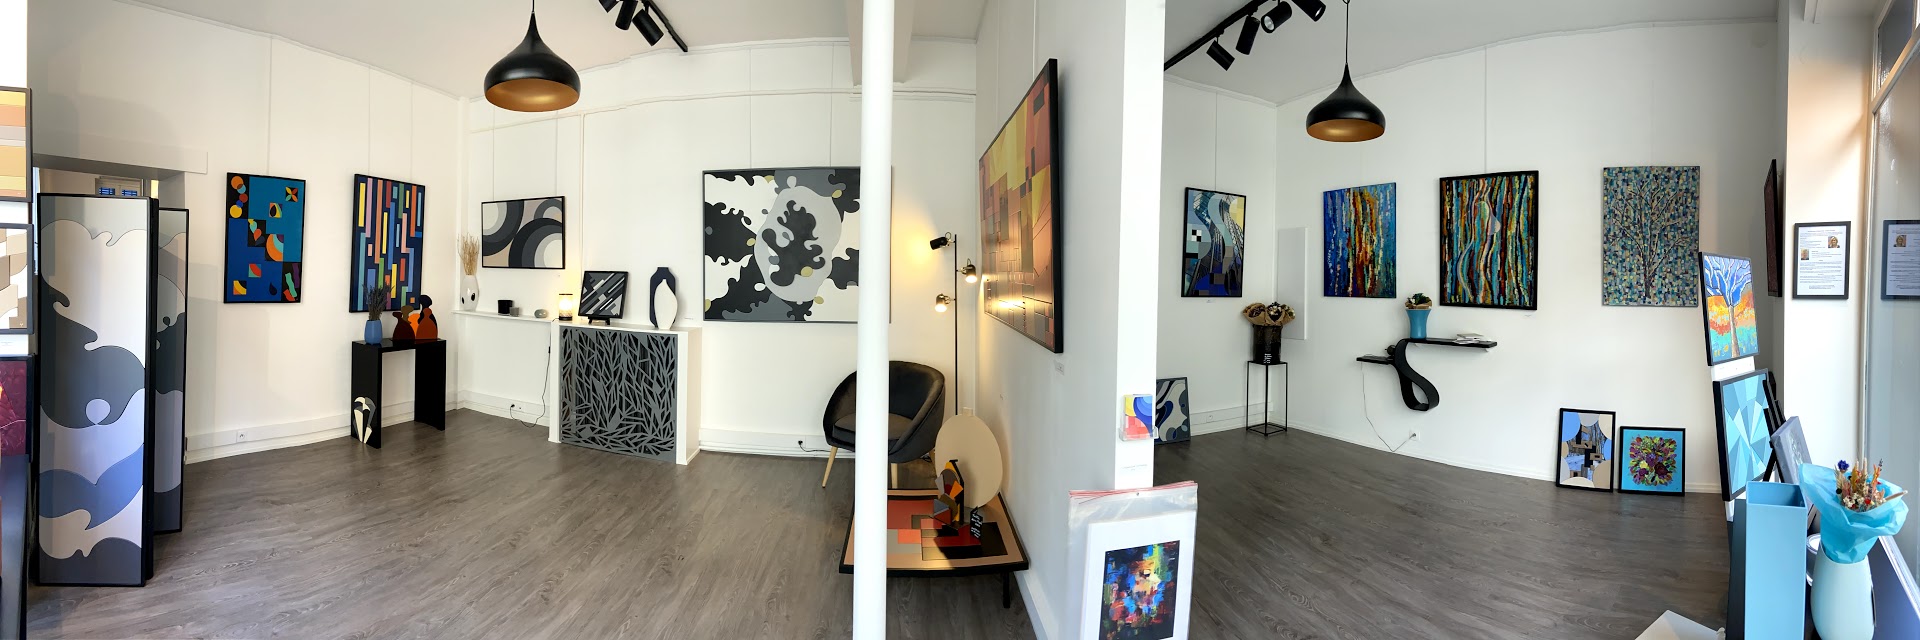 Atelier Galerie